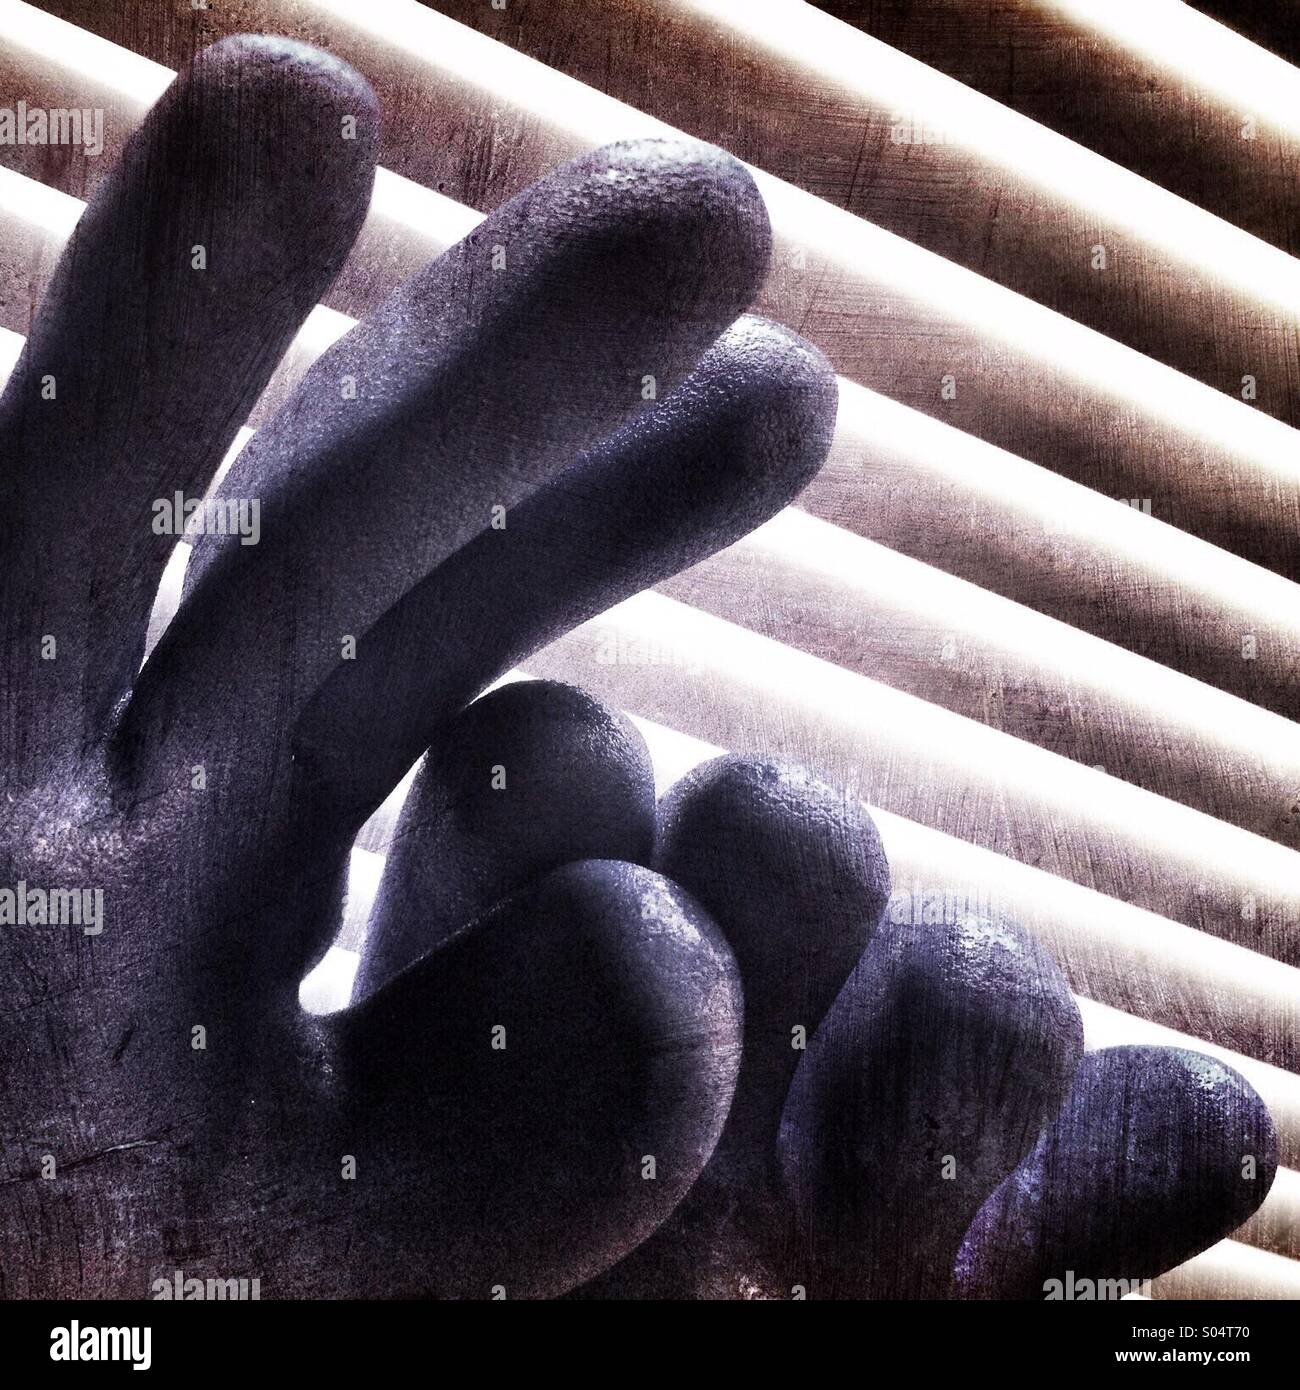 Un abstract immagine artistica delle dita di due guanti di gomma contro un sfondo a strisce Foto Stock